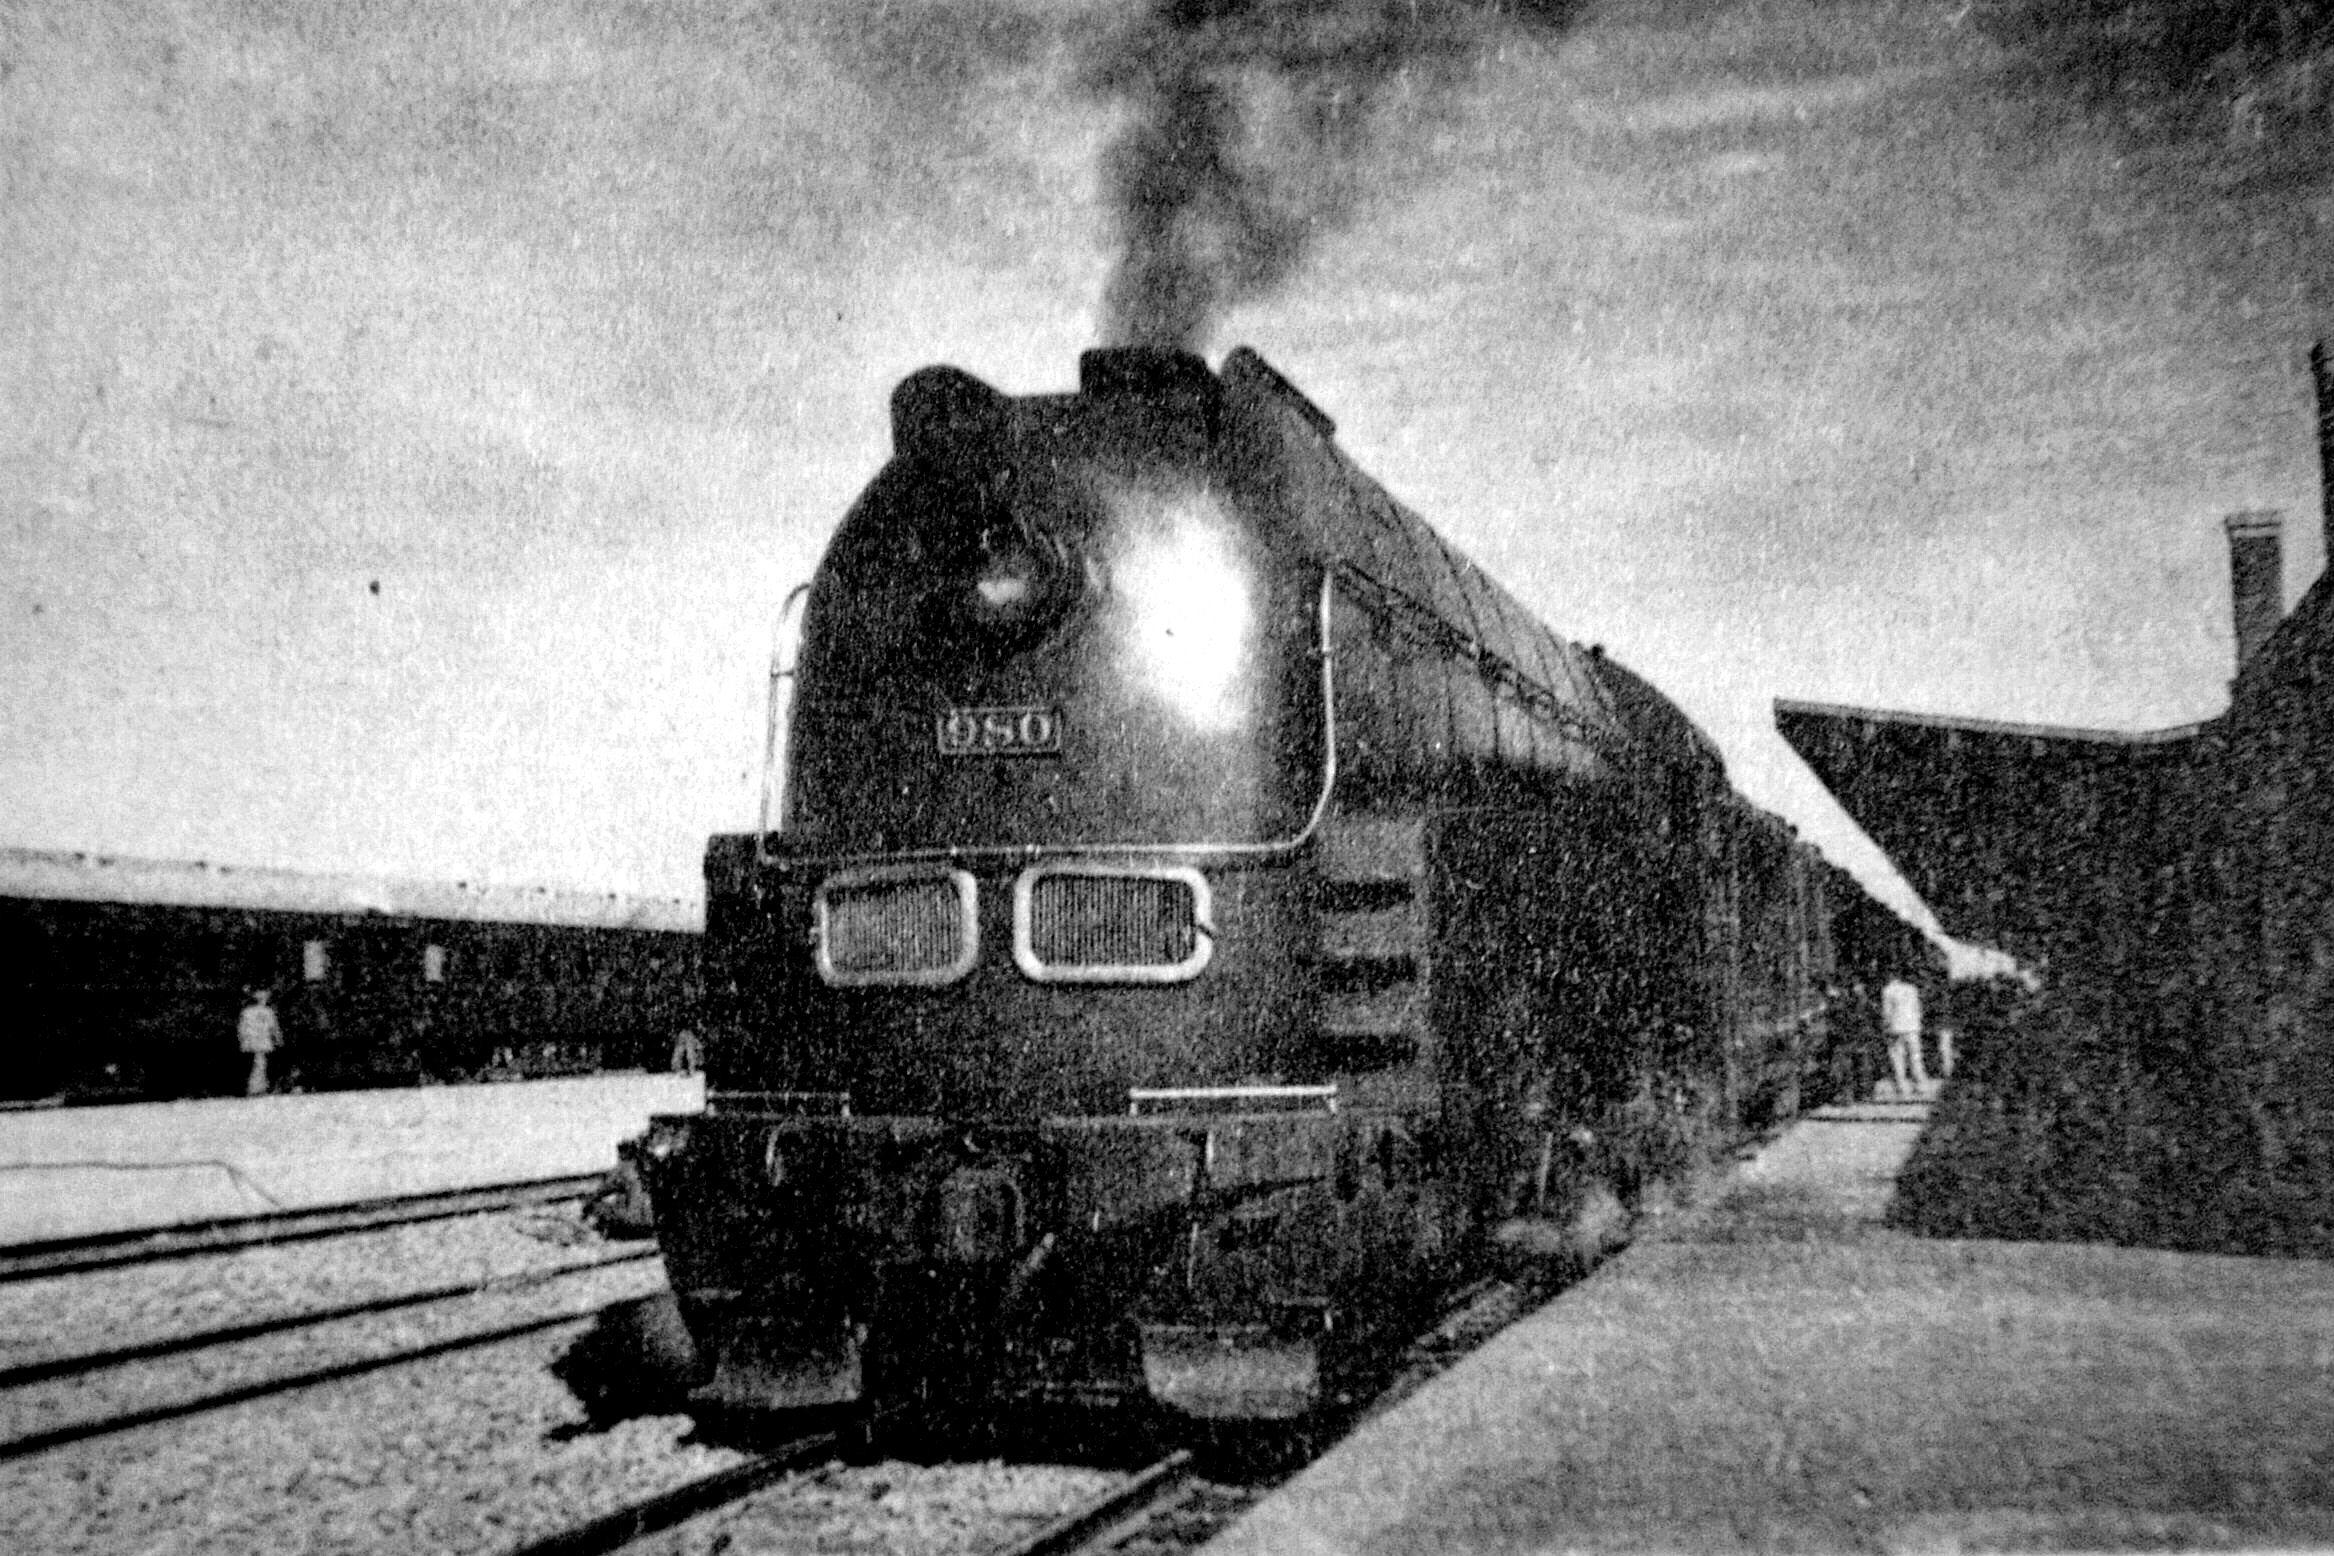 L'Asia Express, fleuron de la Société des chemins de fer de Mandchourie du Sud (South Mandchuria Railways - SMR), à l’époque la locomotive la plus rapide du monde. (Source : Excite)